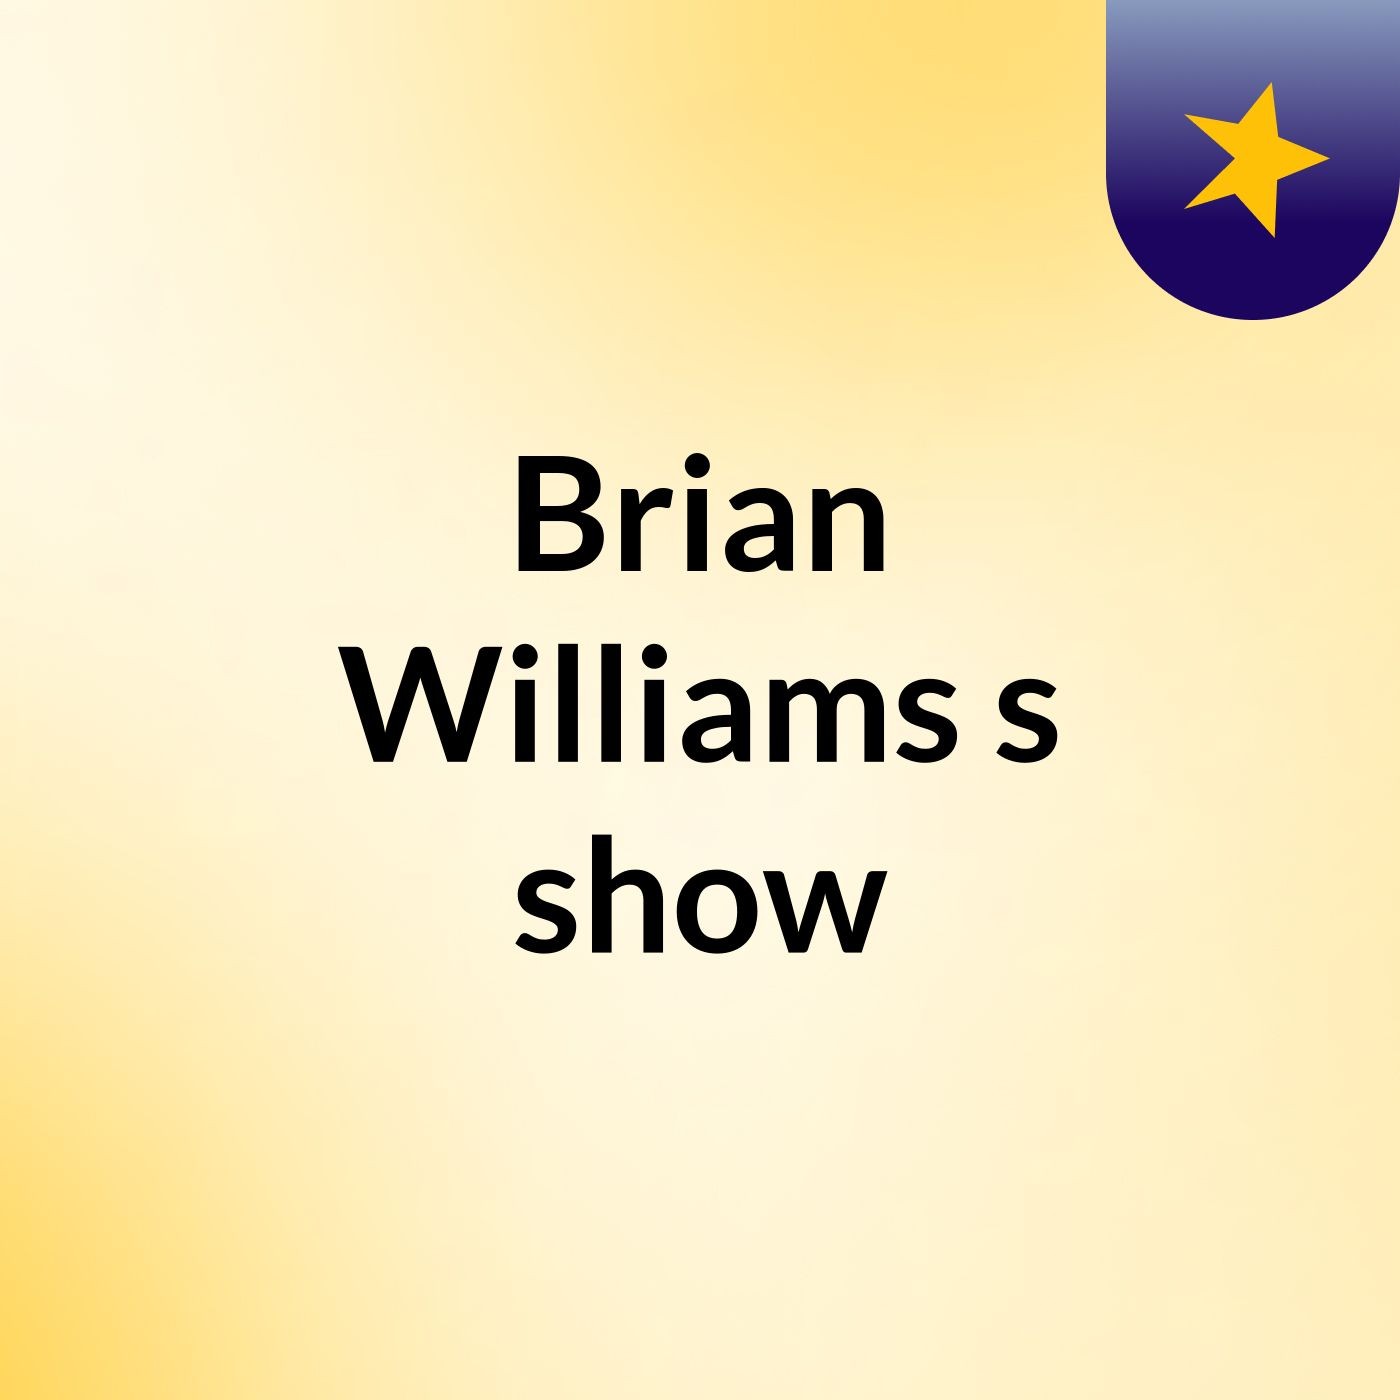 Brian Williams's show